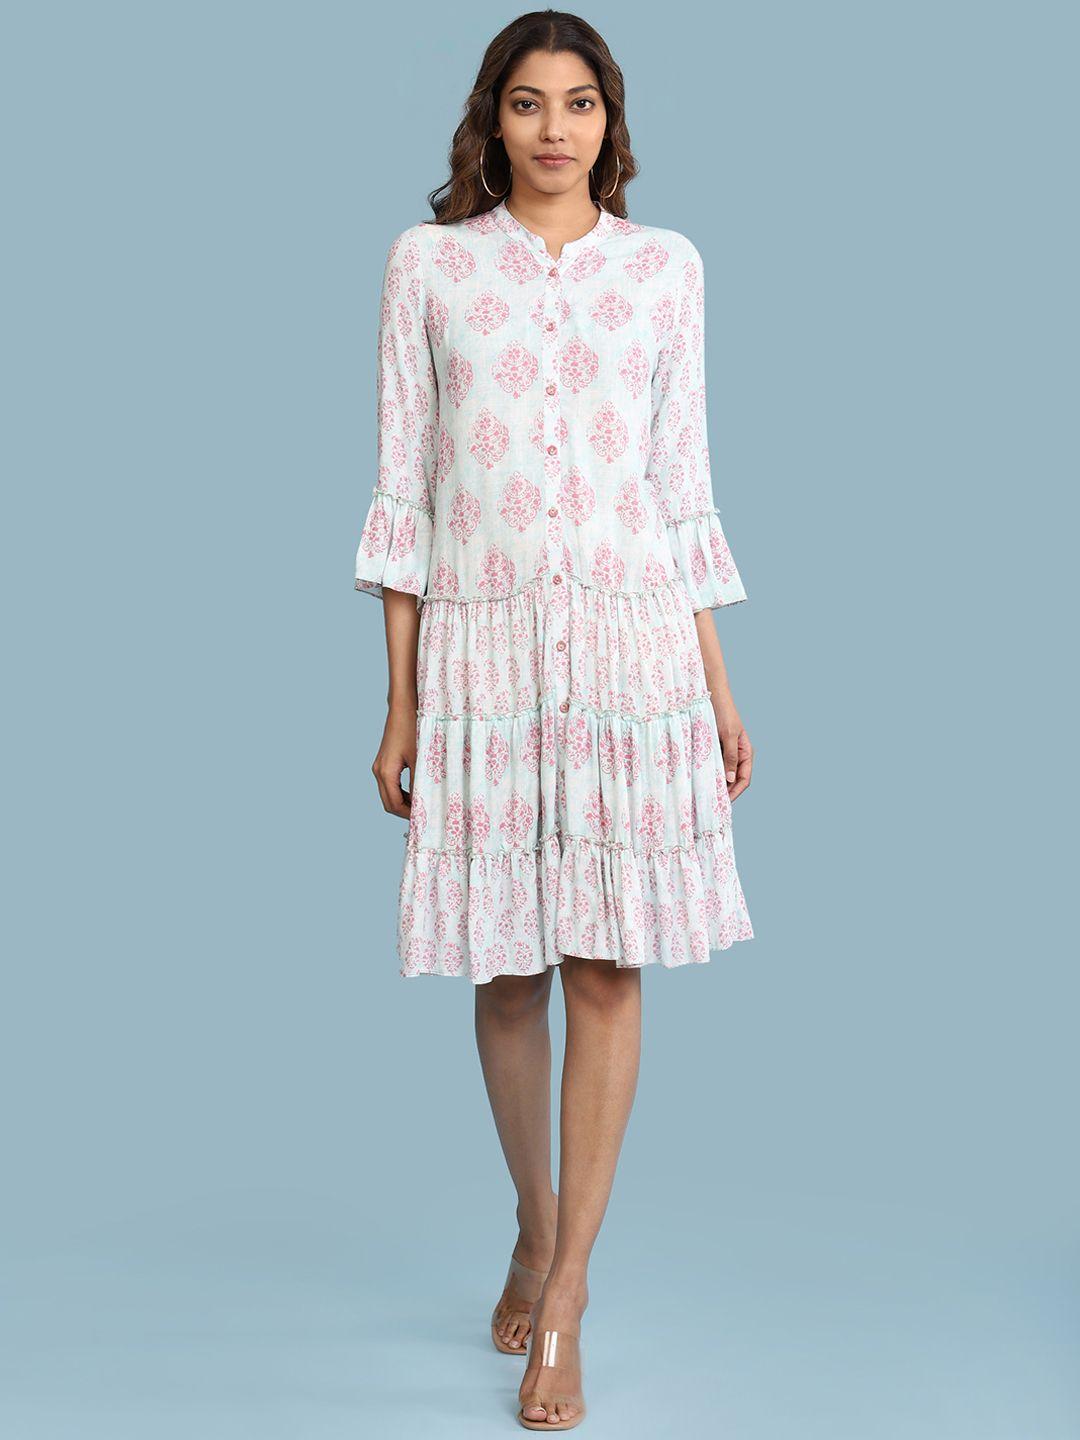 aarke Ritu Kumar Sea Green & Pink Ethnic Motifs A-Line Midi Dress